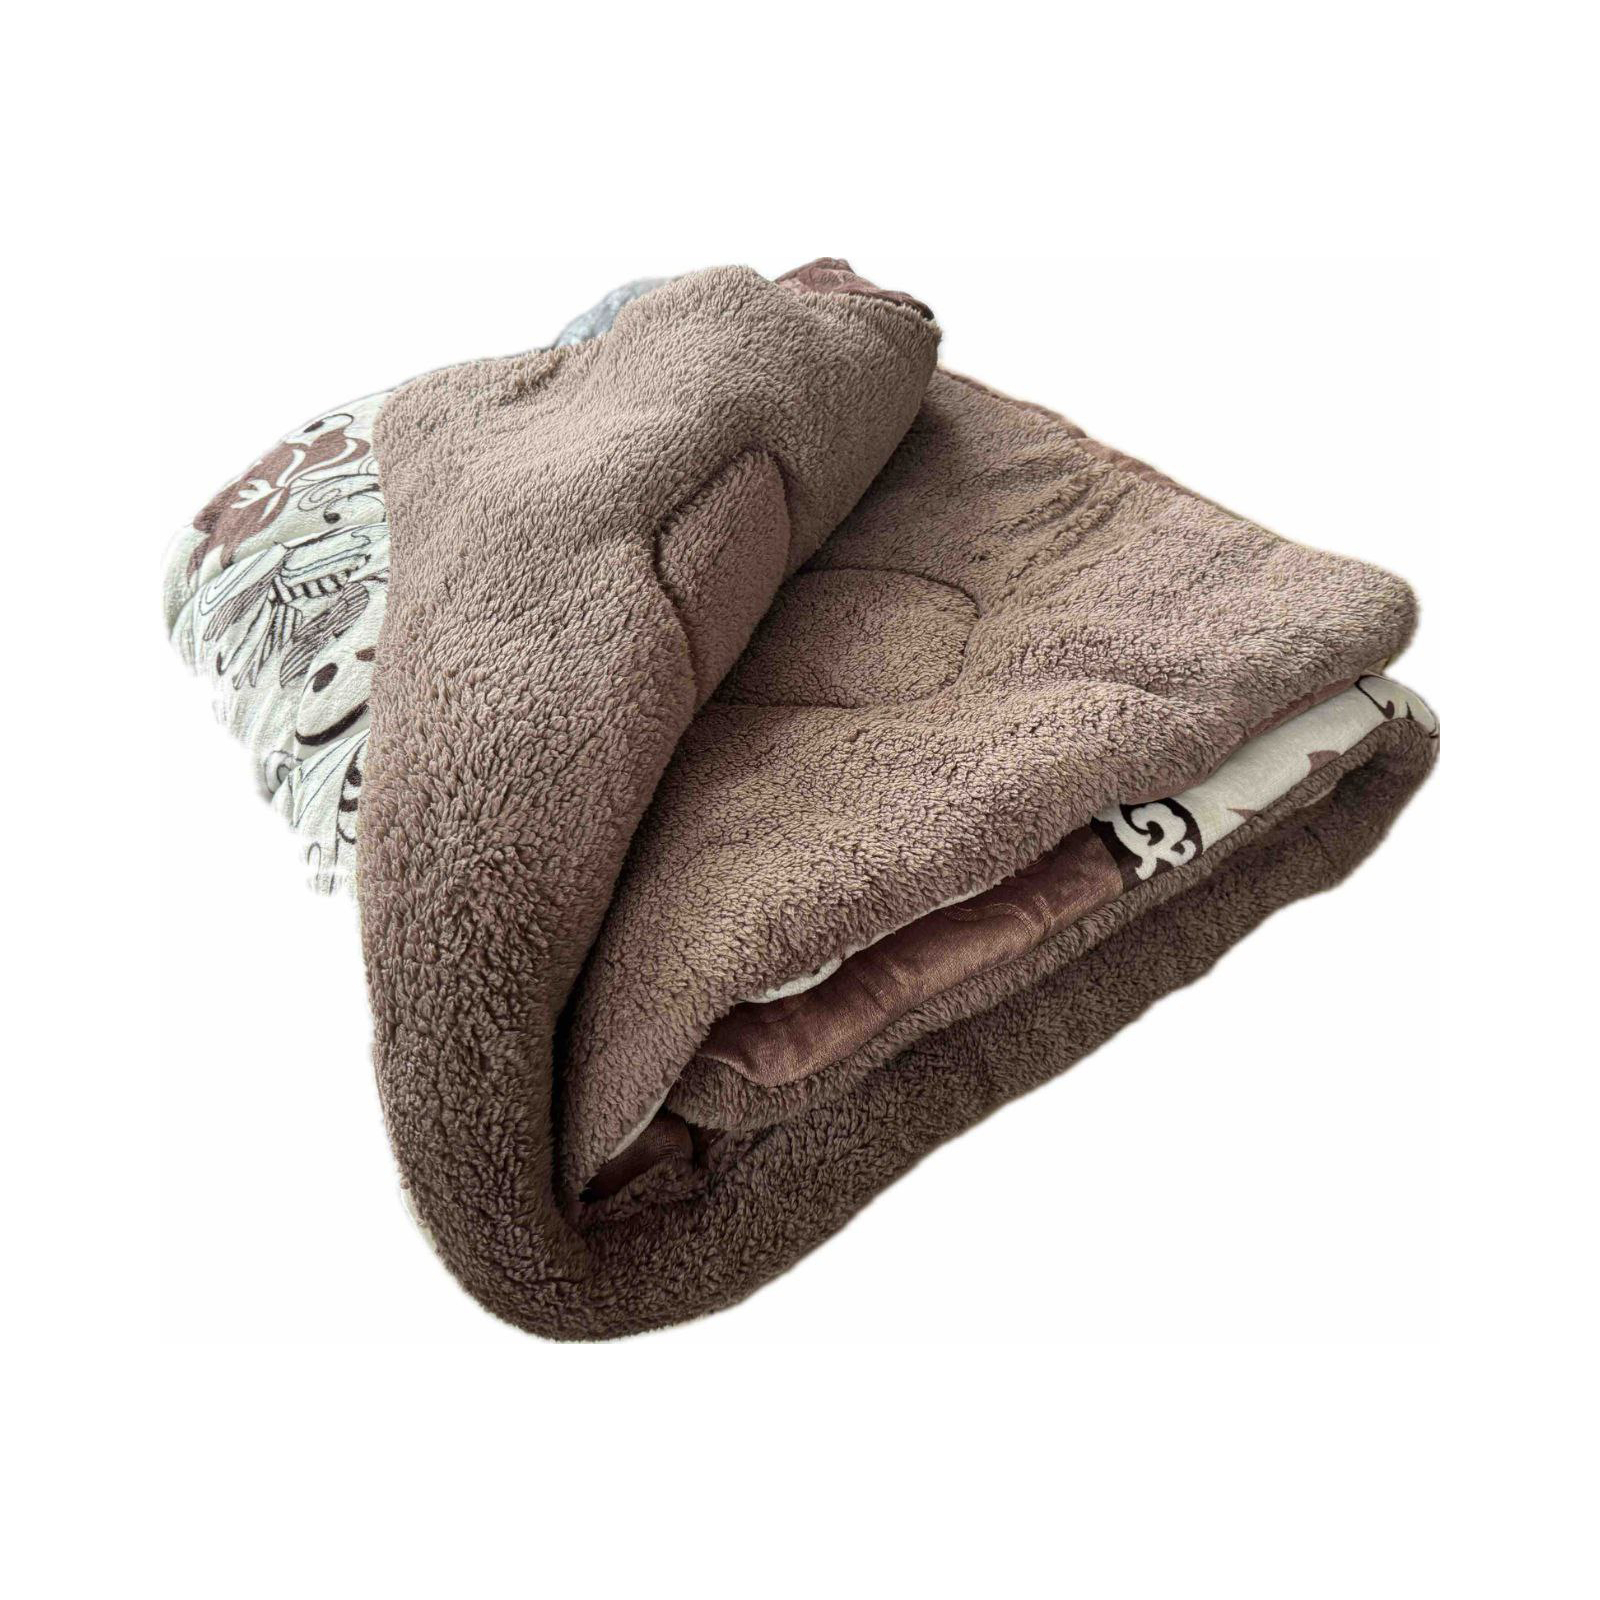 Одеяло Casablanket имнее Искусственная шерсть Коричневое евро 200х22 (200Flanely_коричнева)